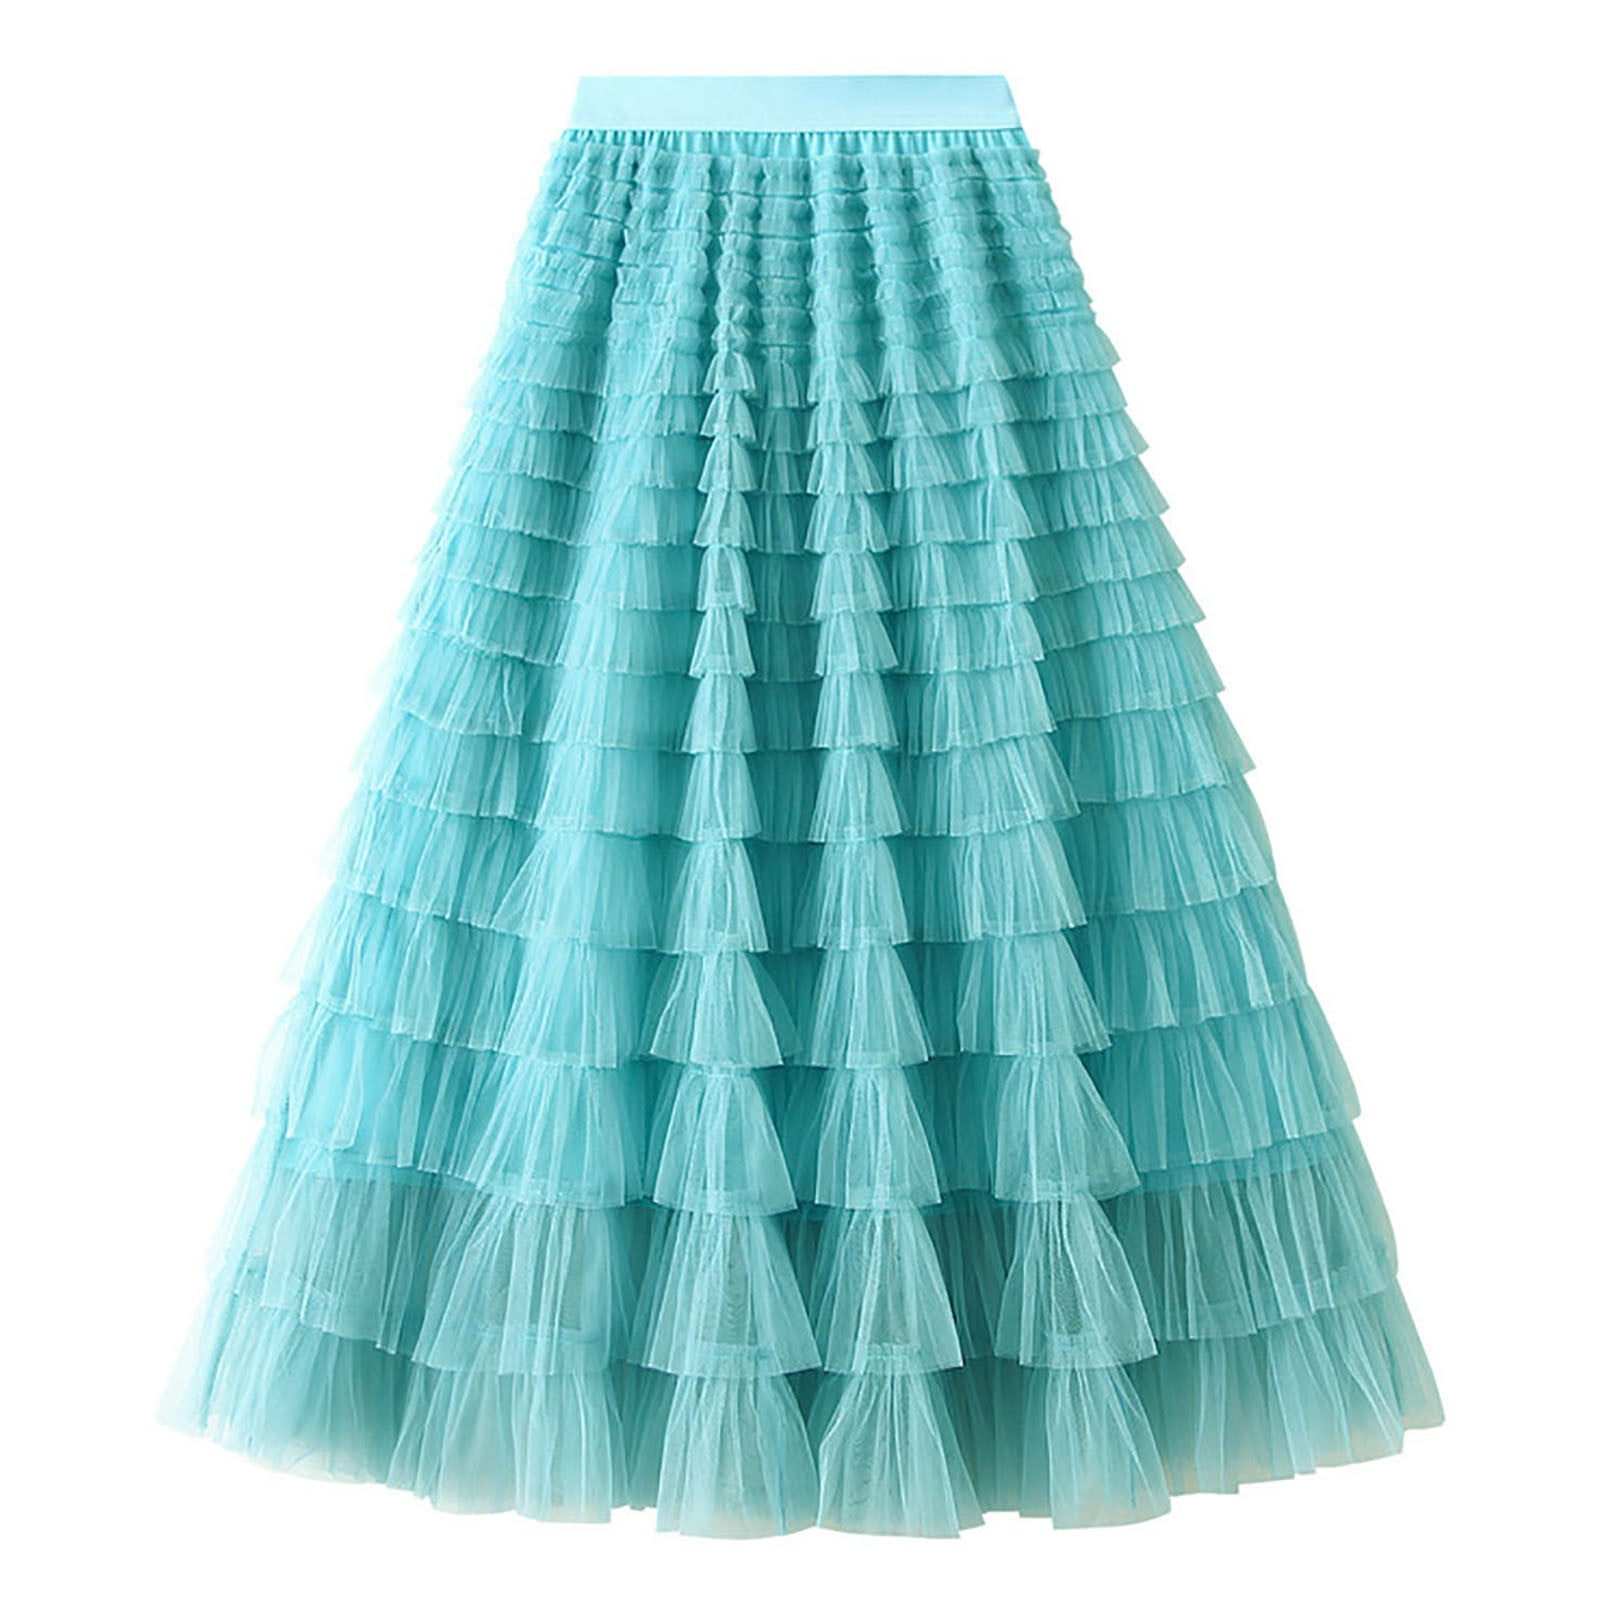 Yievot Women's Cake Skirt Solid Ruffled Mesh Skirt High Waist Prom ...